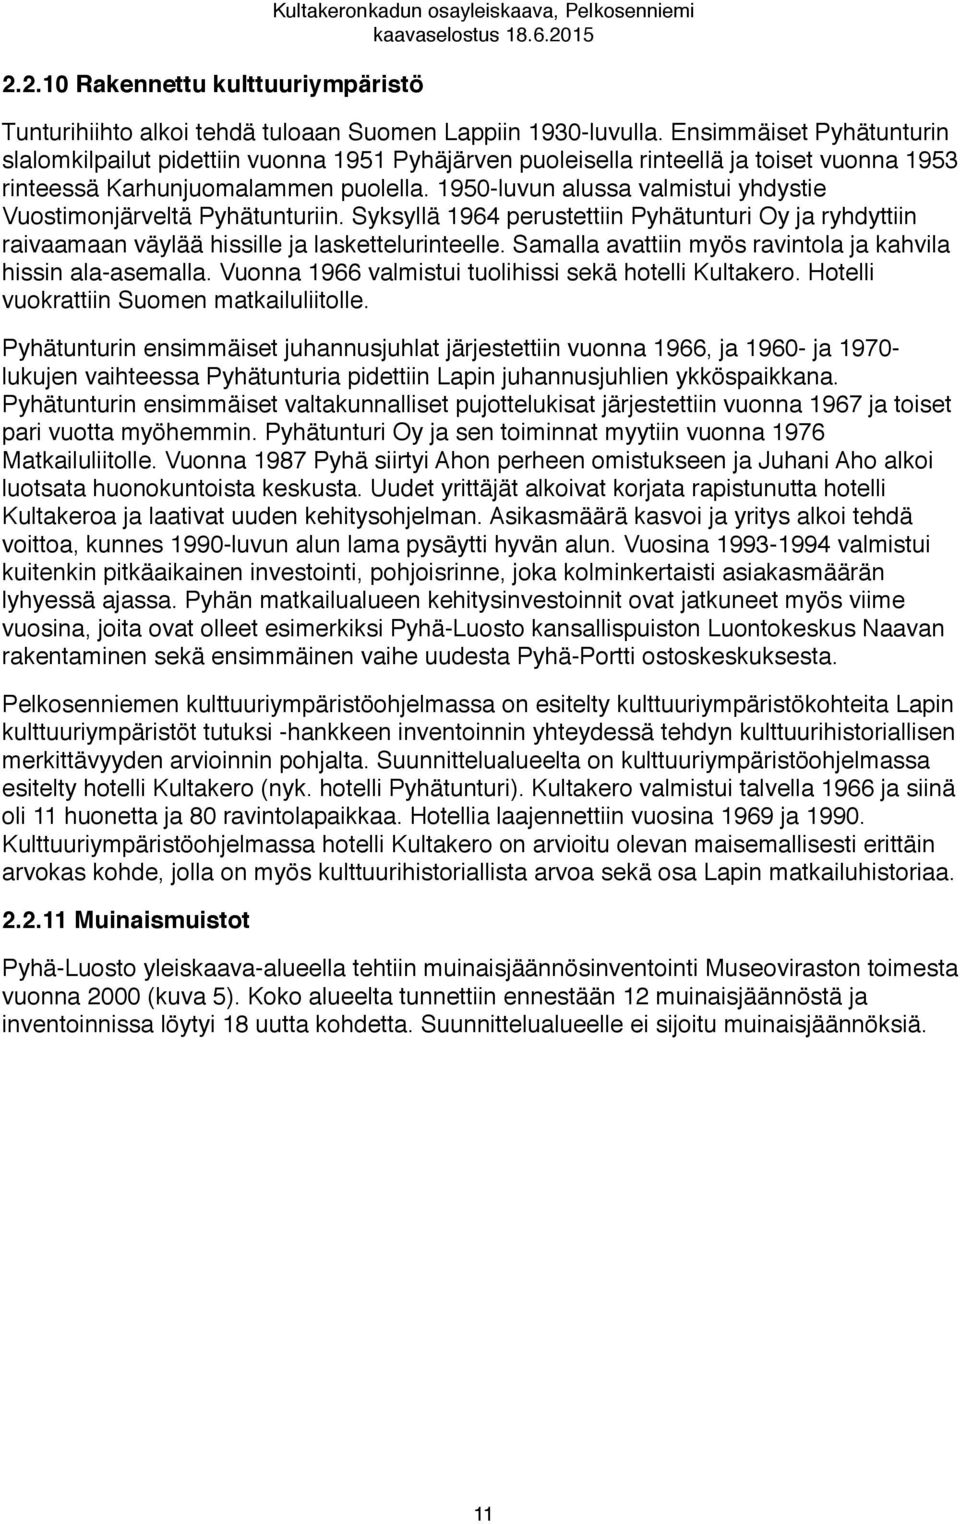 1950-luvun alussa valmistui yhdystie Vuostimonjärveltä Pyhätunturiin. Syksyllä 1964 perustettiin Pyhätunturi Oy ja ryhdyttiin raivaamaan väylää hissille ja laskettelurinteelle.